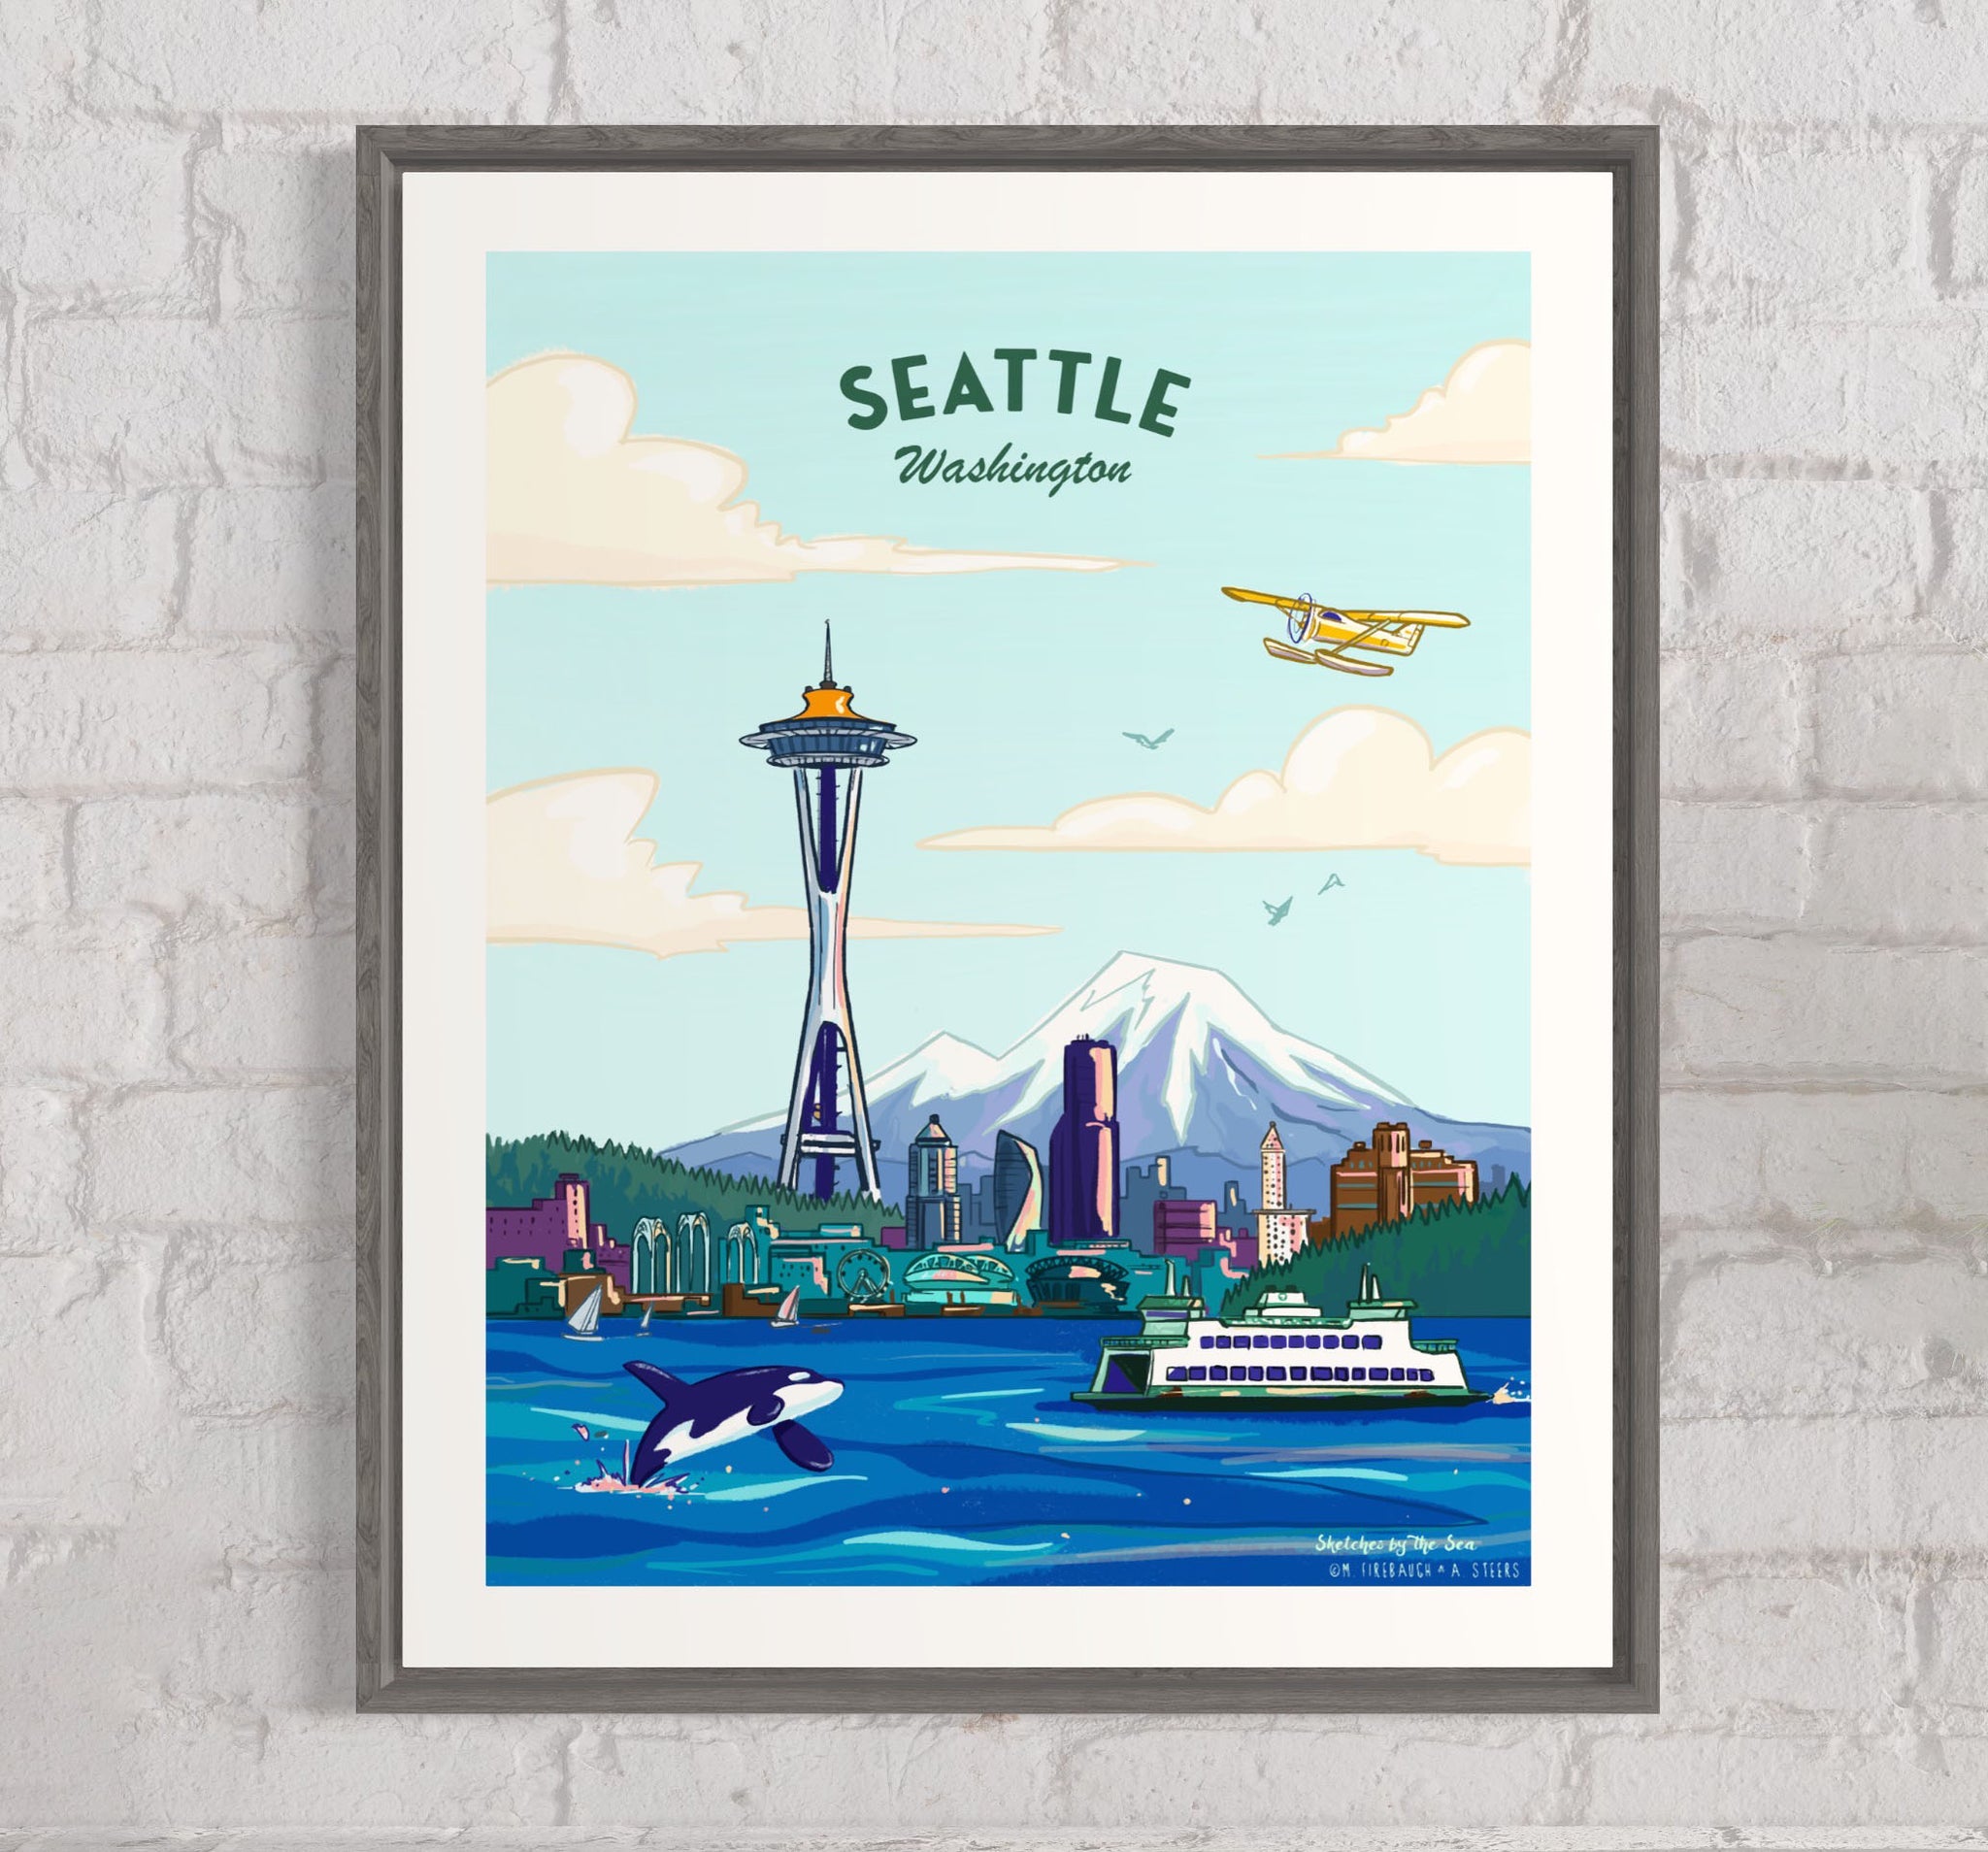 Seattle Travel Poster, Retro Inspired Art